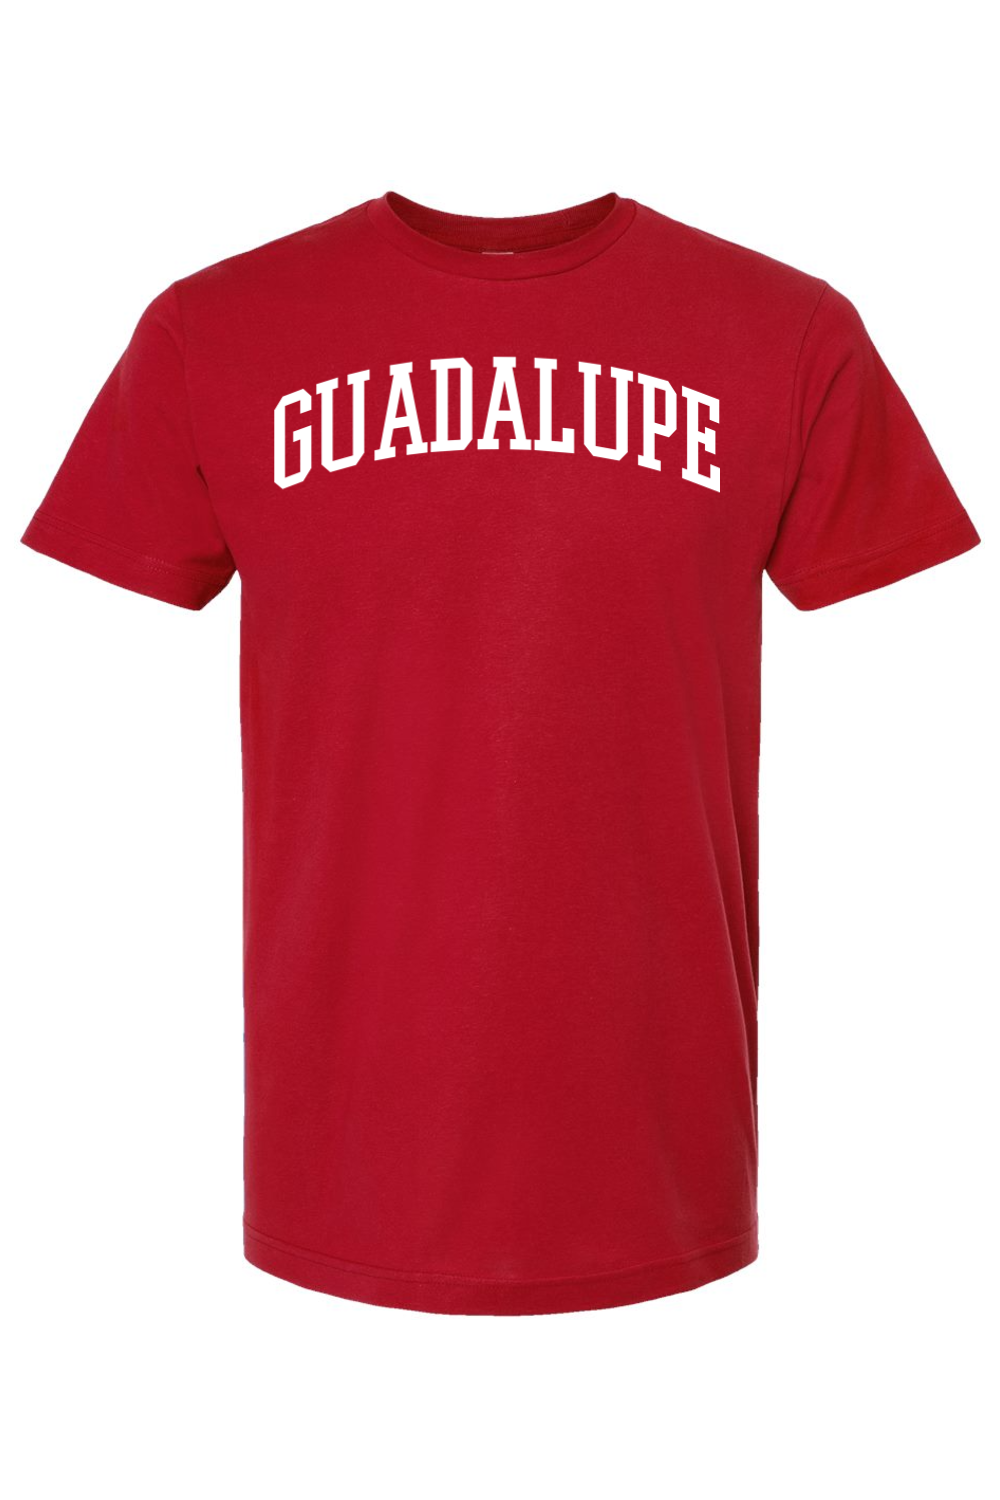 Guadalupe - Collegiate